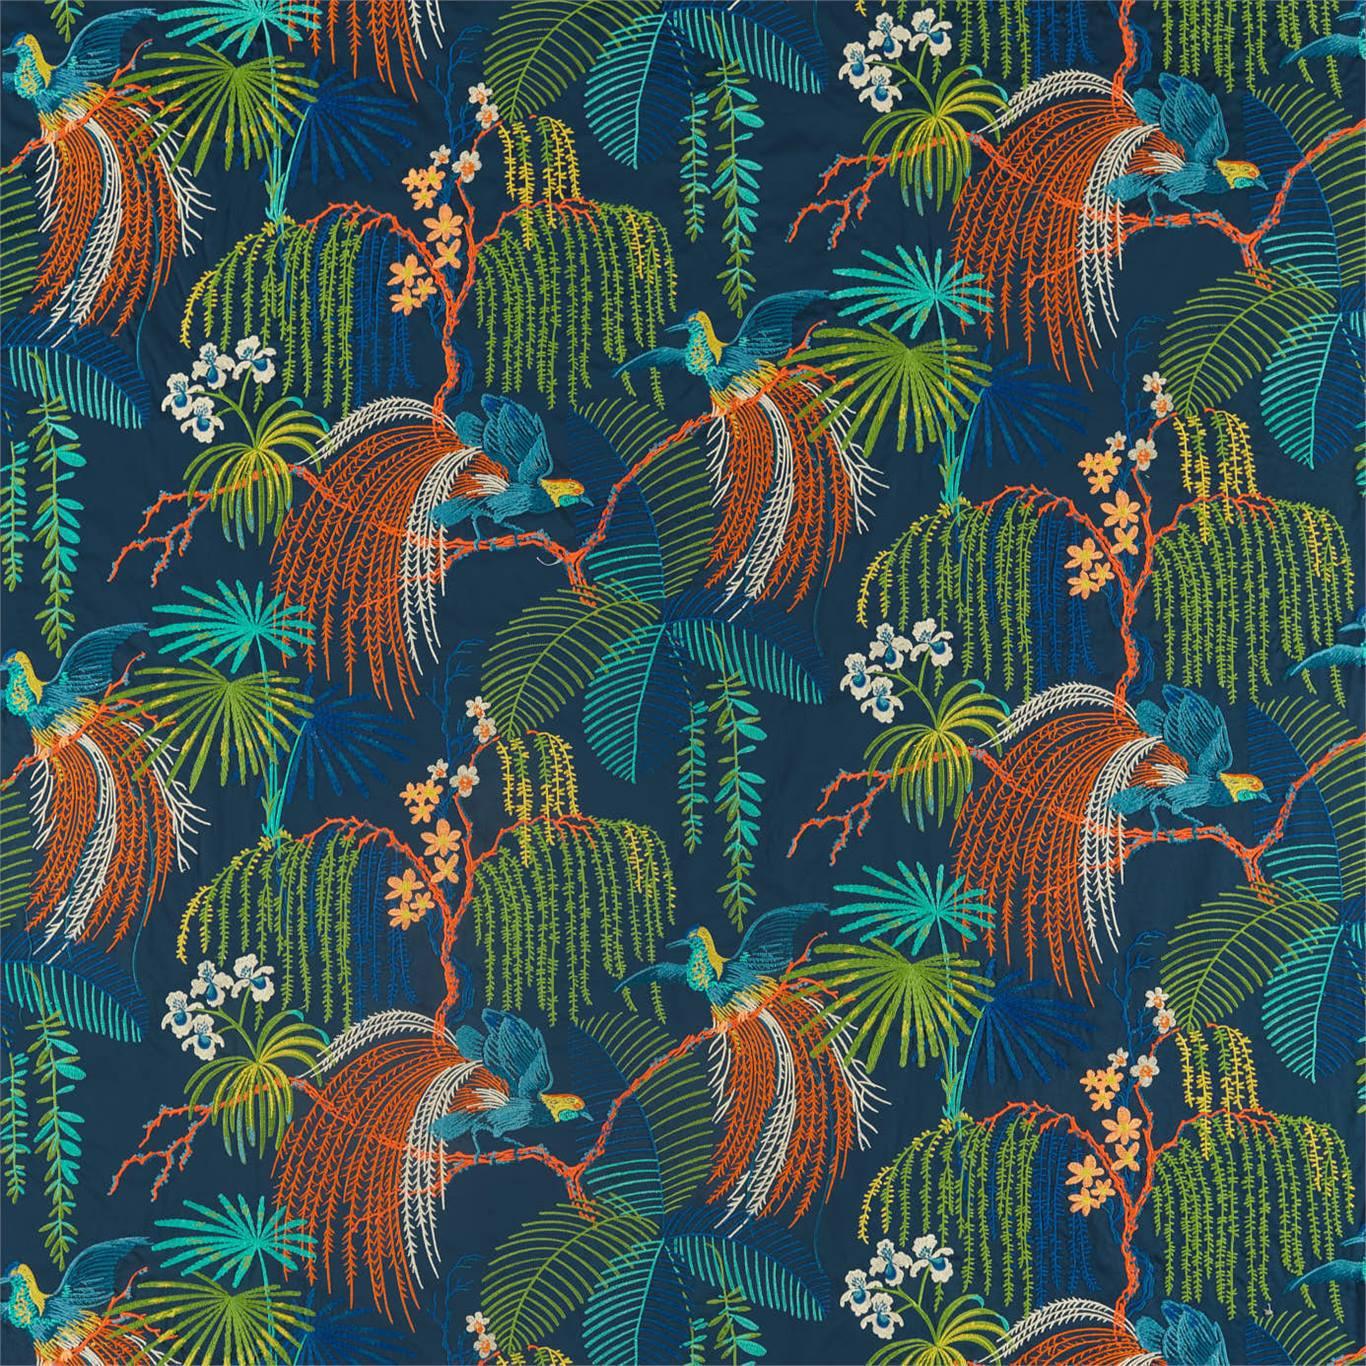 Tessuto Sanderson Rain Forest Embroidery - Brand_Sanderson, Fantasia_Natura, Uso_Rivestimento cuscini, Uso_Tende - Tessuti - Sanderson